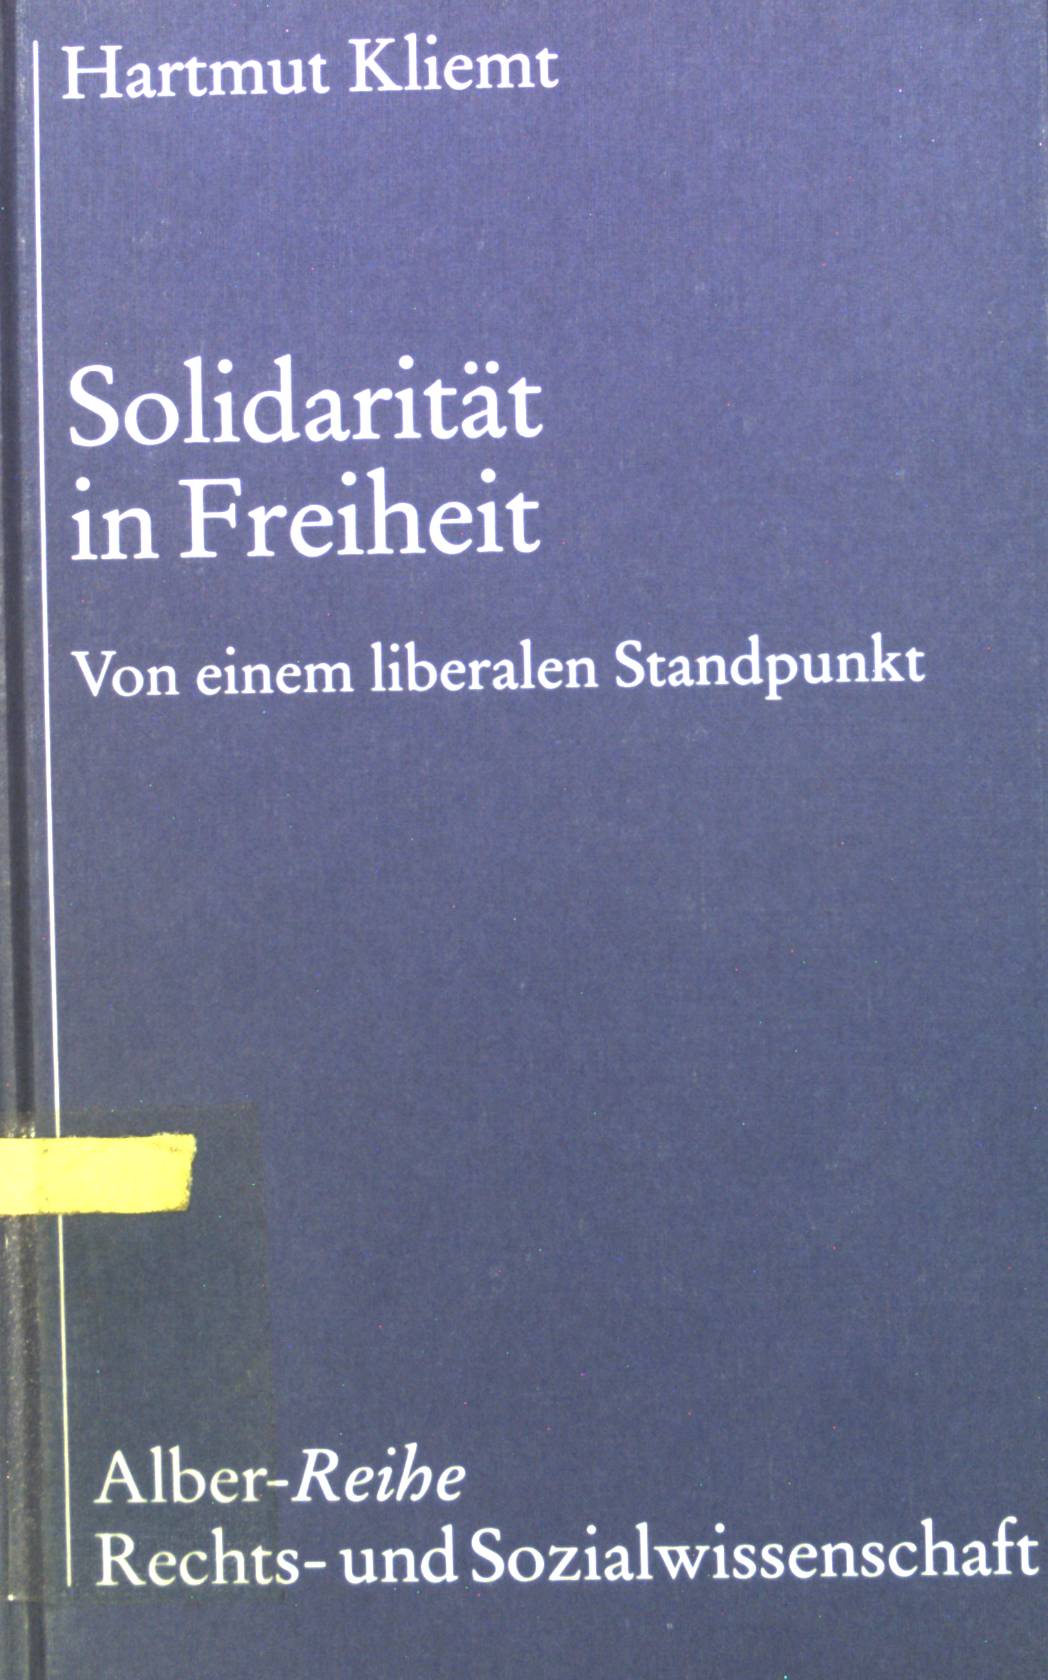 Solidarität in Freiheit : von einem liberalen Standpunkt. Alber-Reihe Rechts- und Sozialwissenschaft - Kliemt, Hartmut